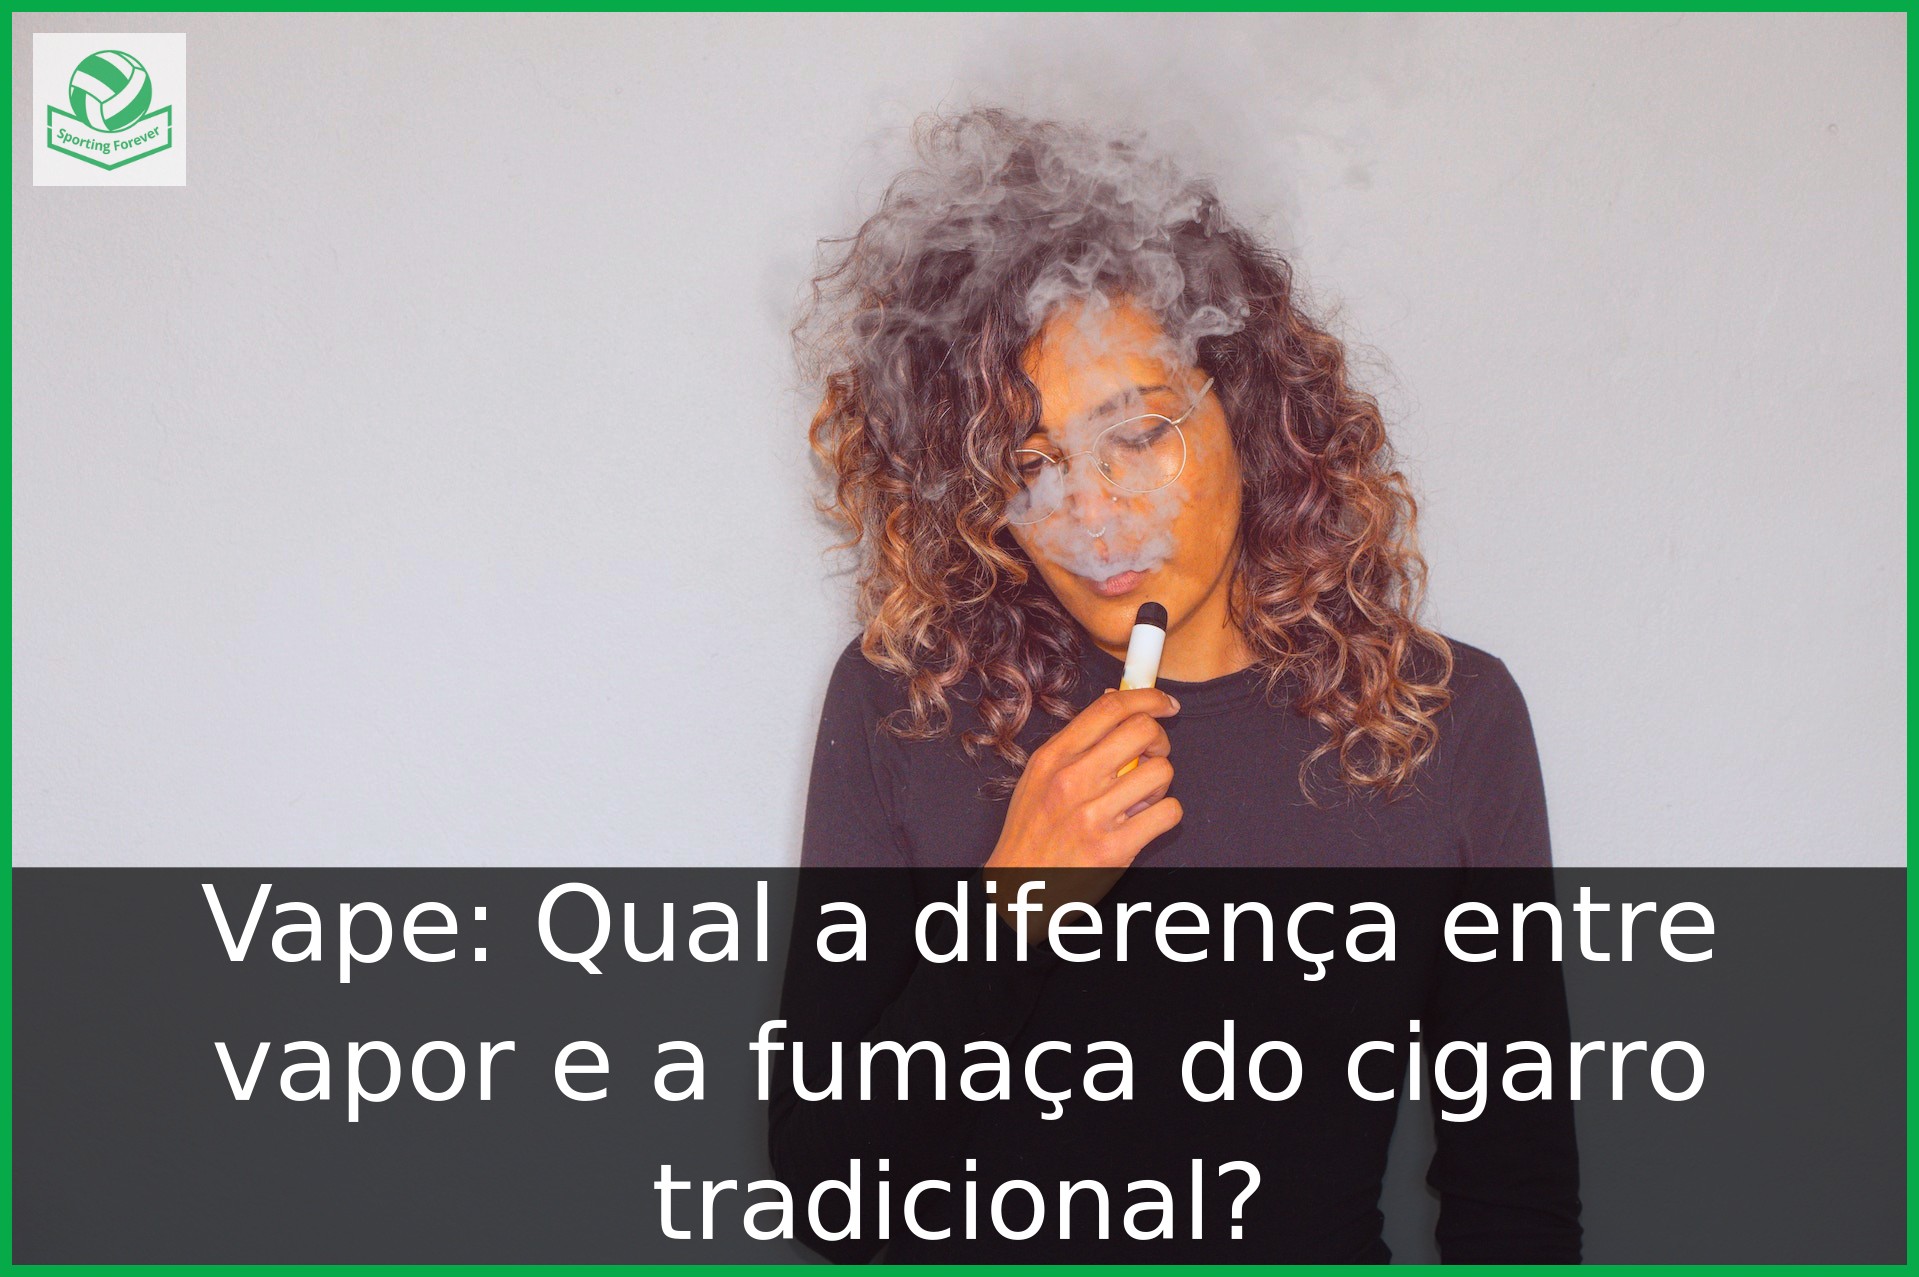 Vape: Qual a diferença entre vapor e a fumaça do cigarro tradicional?